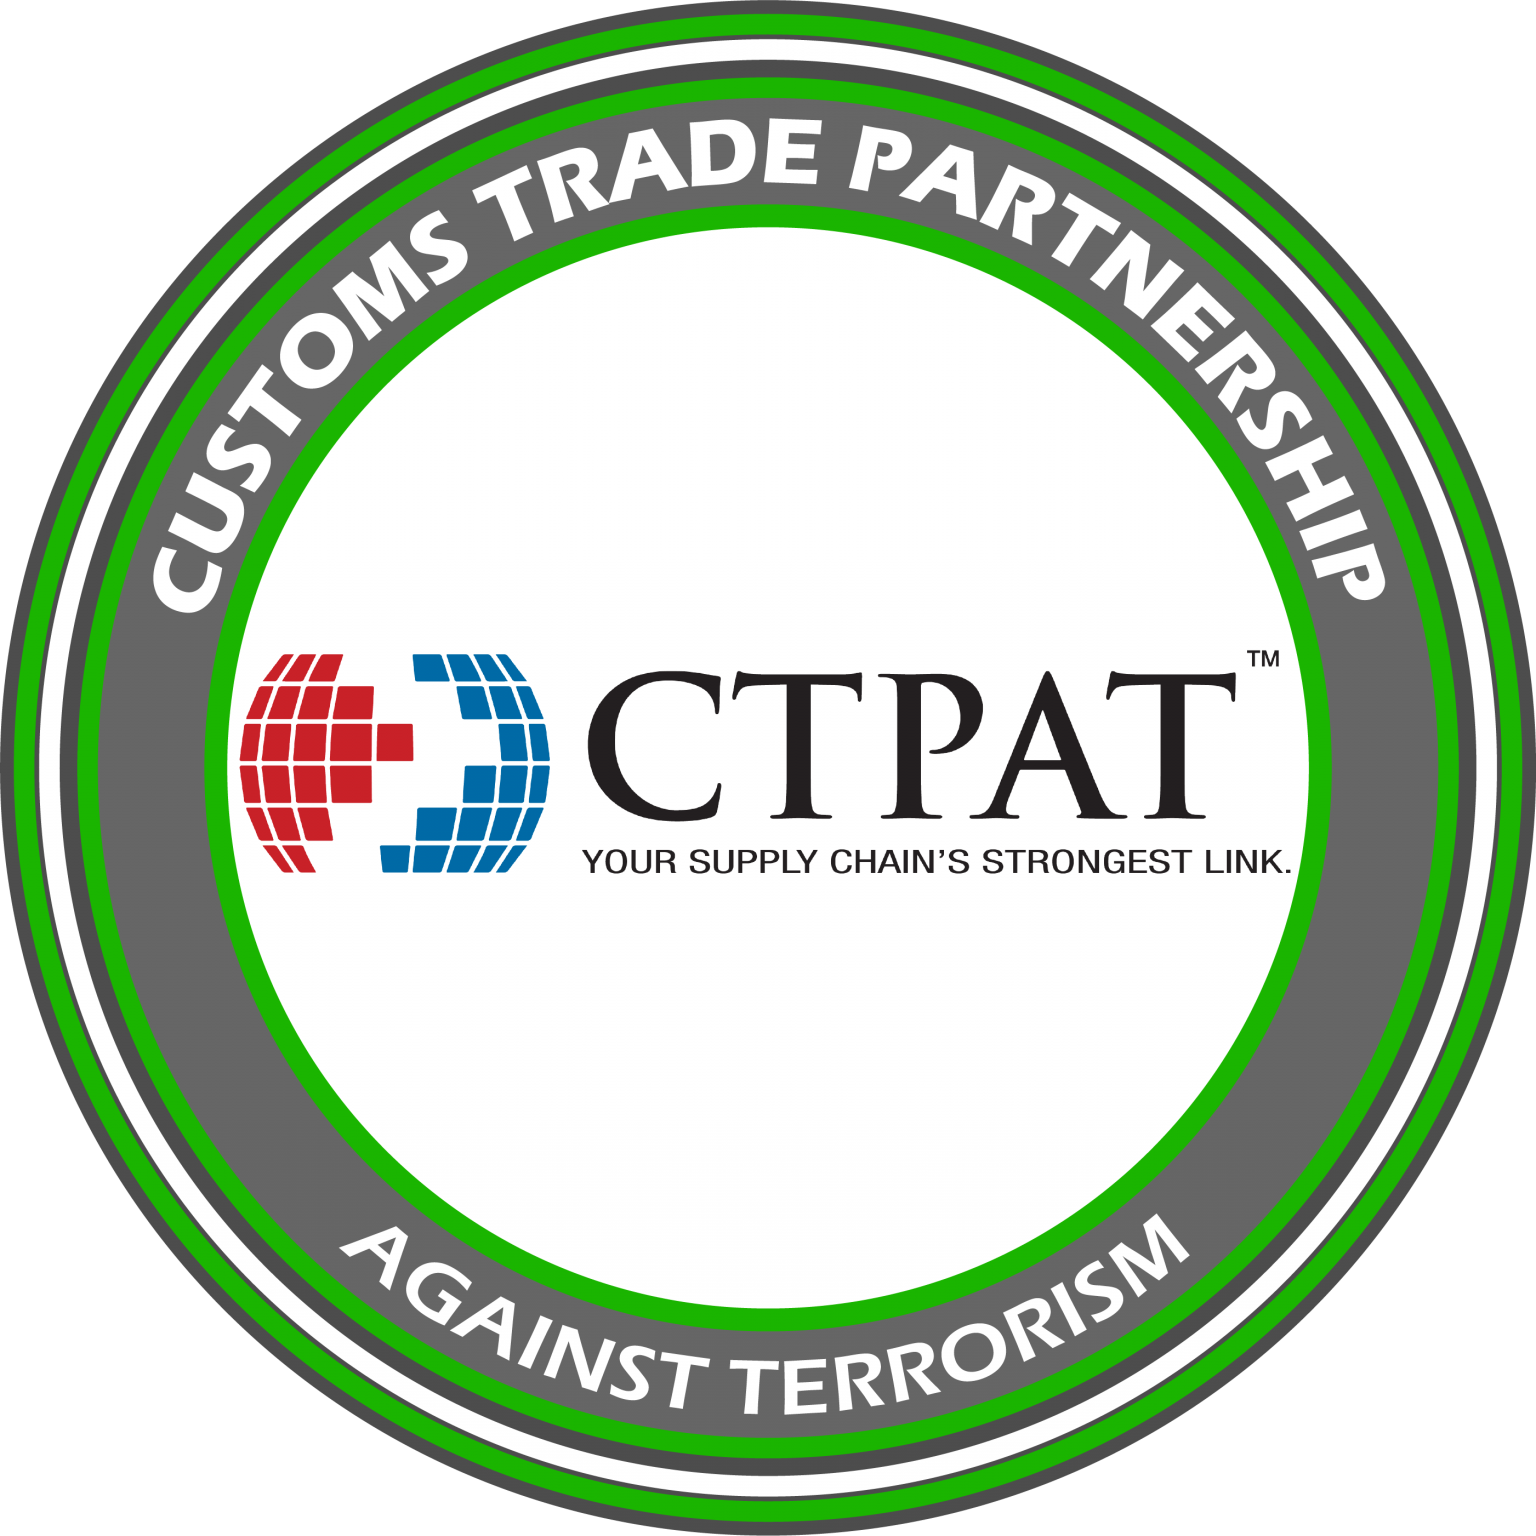 Ctpat Customs Trade Partnership Against Terrorism 3pp Global 9424